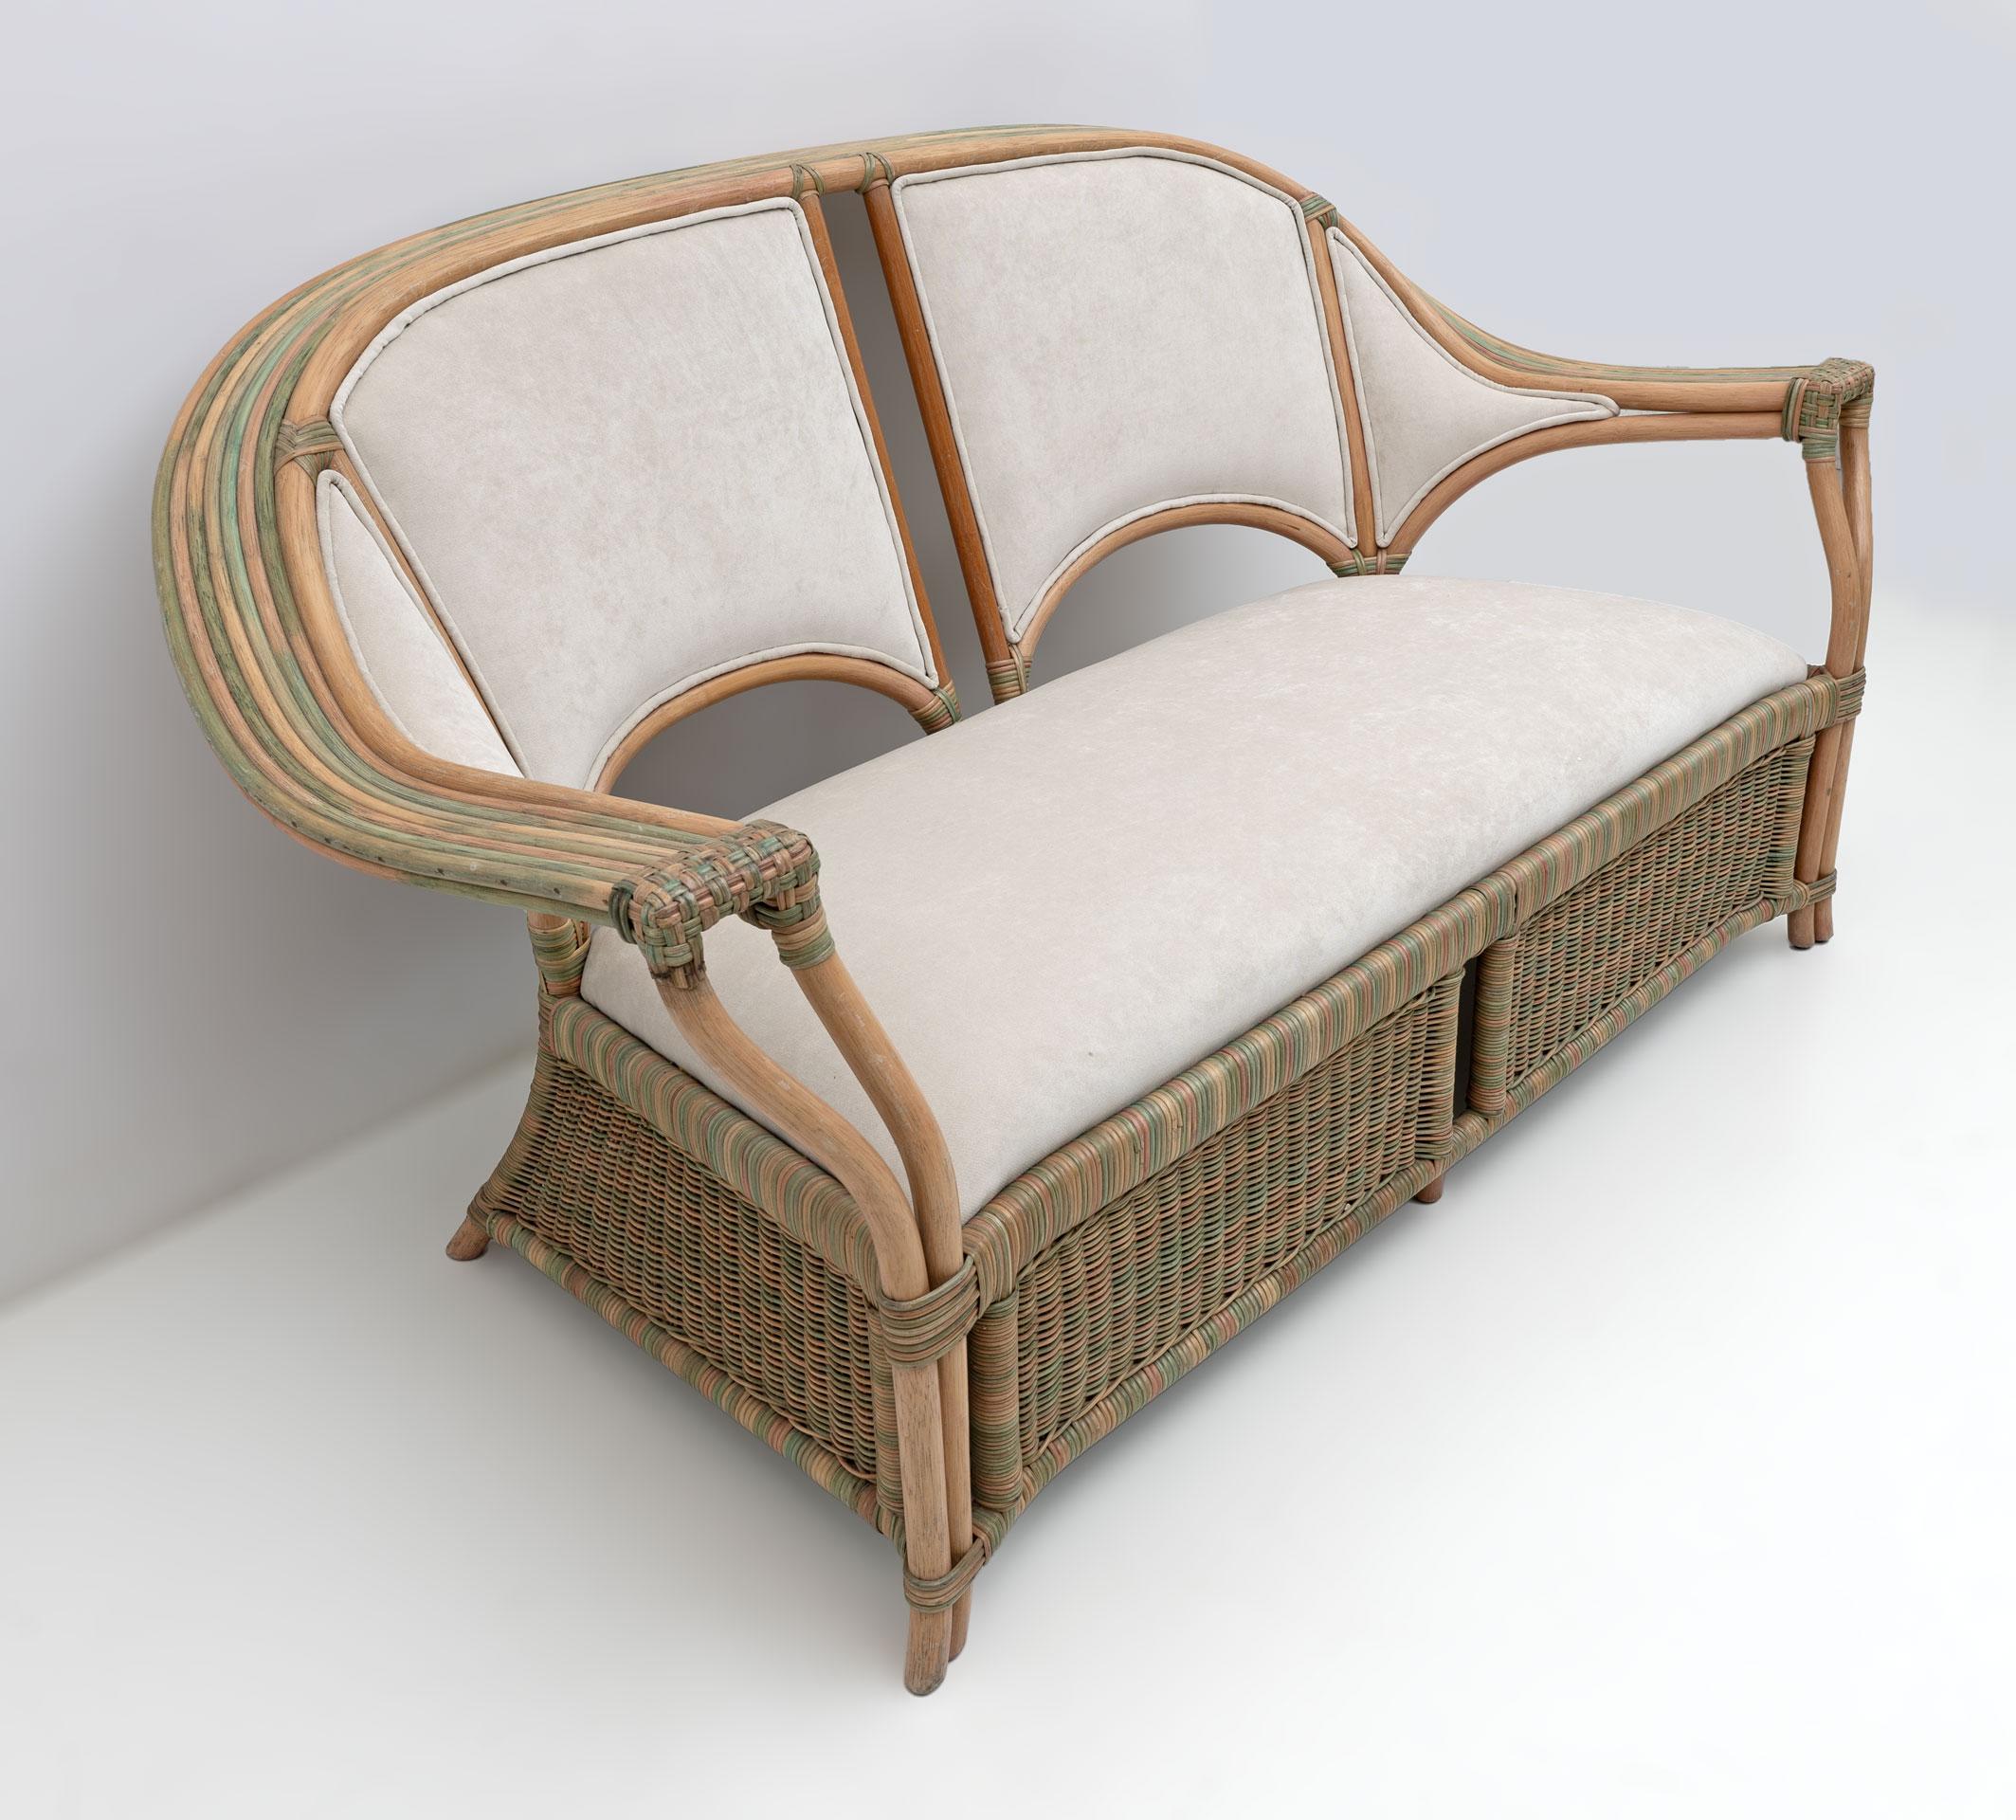 Ein Paar Sessel und ein Zweisitzer-Sofa mit Rattanstruktur, vollständig handgeflochten.
Italienisches Design aus den späten 1970er Jahren, neu gepolstert, aus elfenbeinfarbenem Mikrofaserstoff.
Die Sessel messen:
Abmessungen: Höhe: 83 cm (32,68